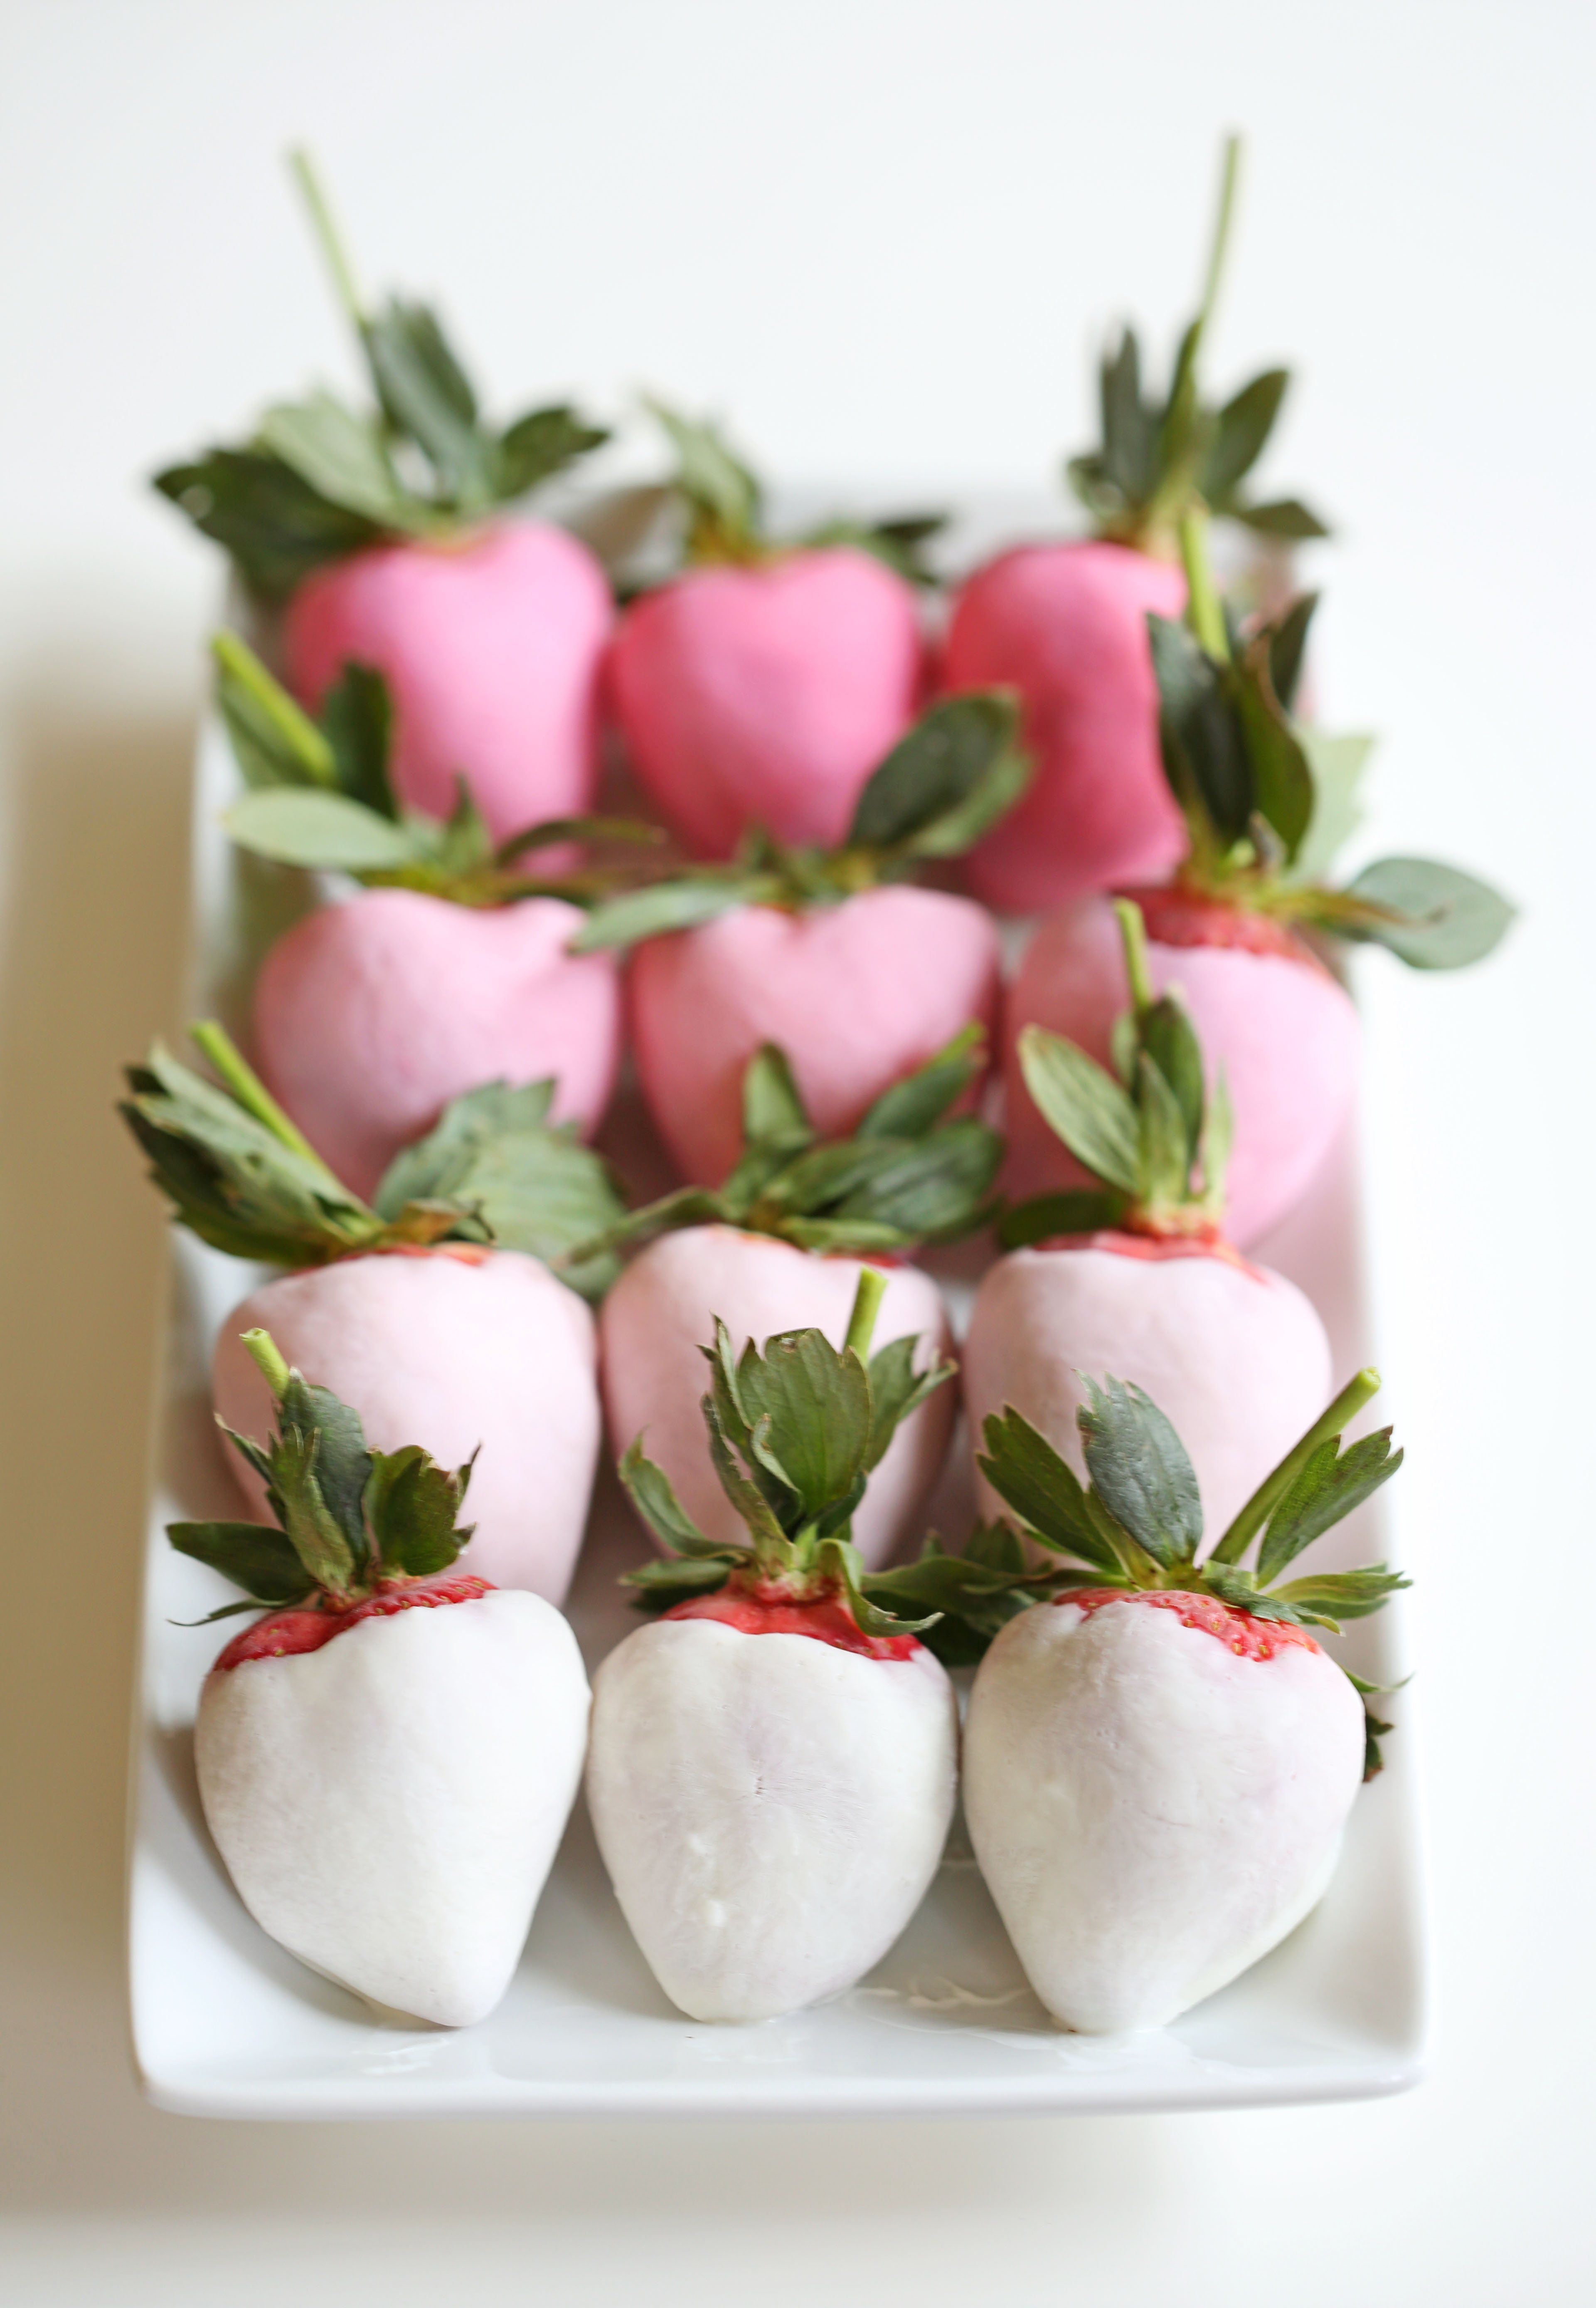 Yogurt Covered Strawberries Valentine's Day Recipes